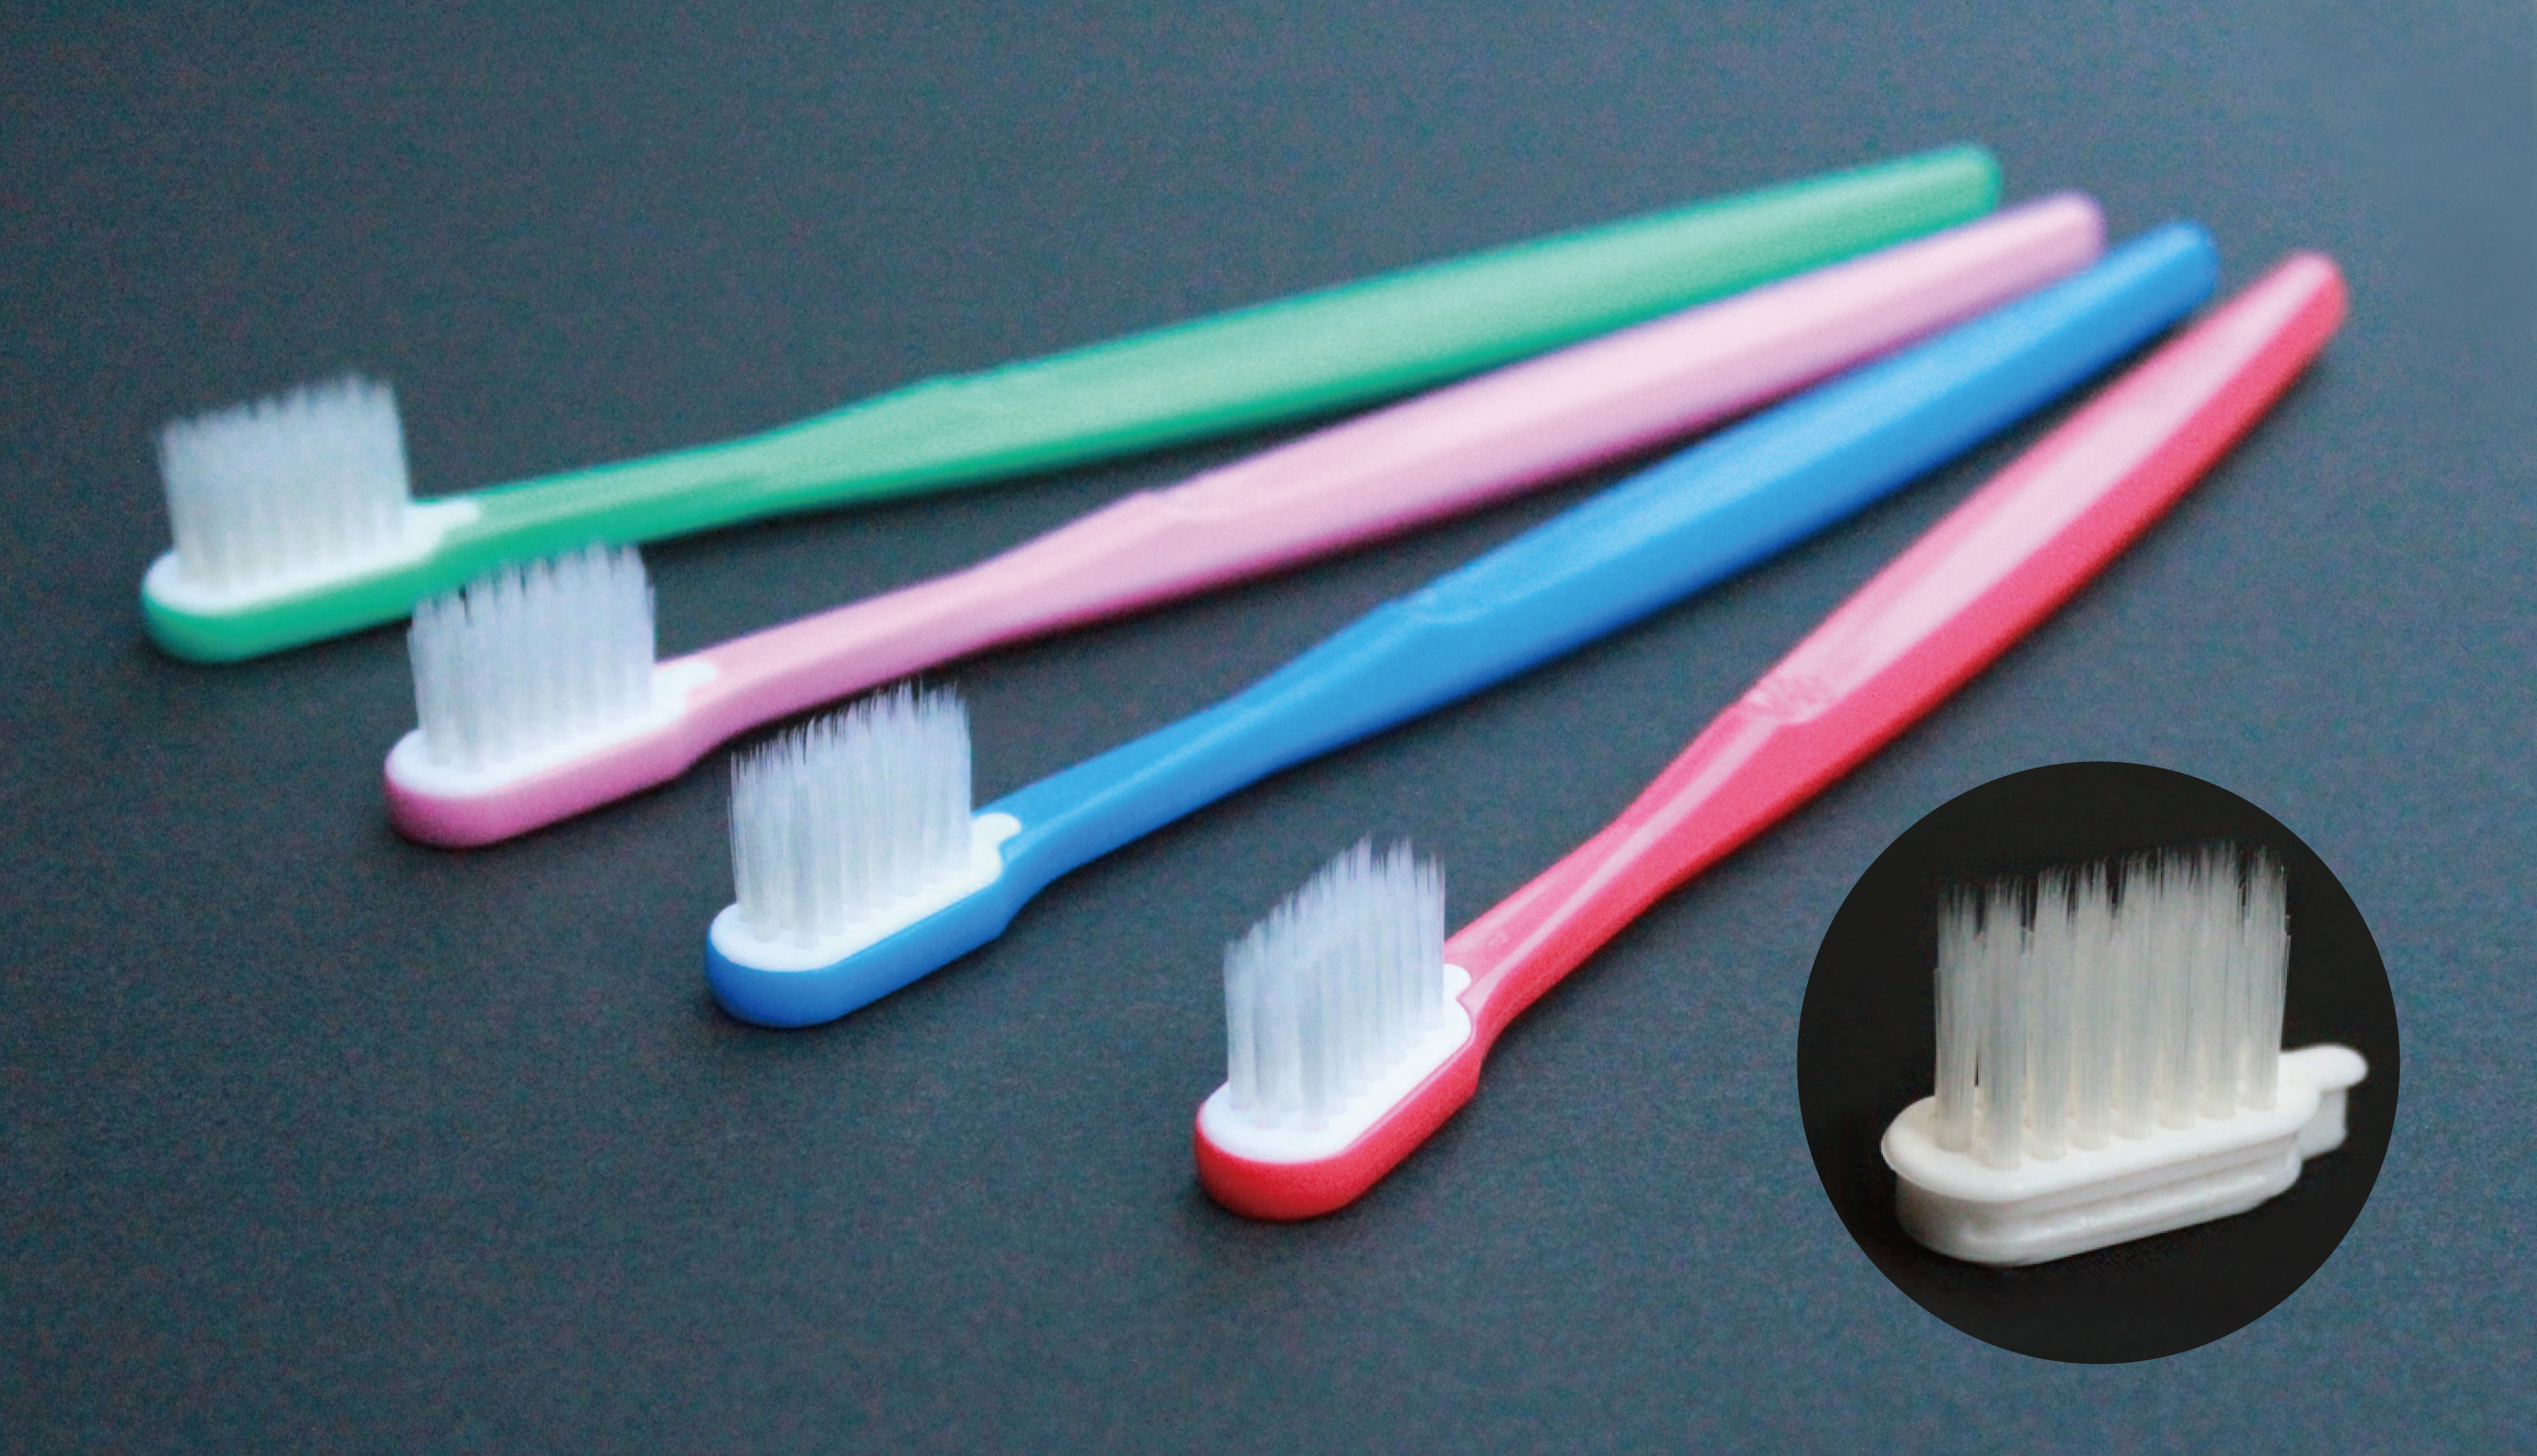 ブラシを交換する歯ブラシ～みんなの力で地球を守ろう！カーボン・オフセットキャンペーン